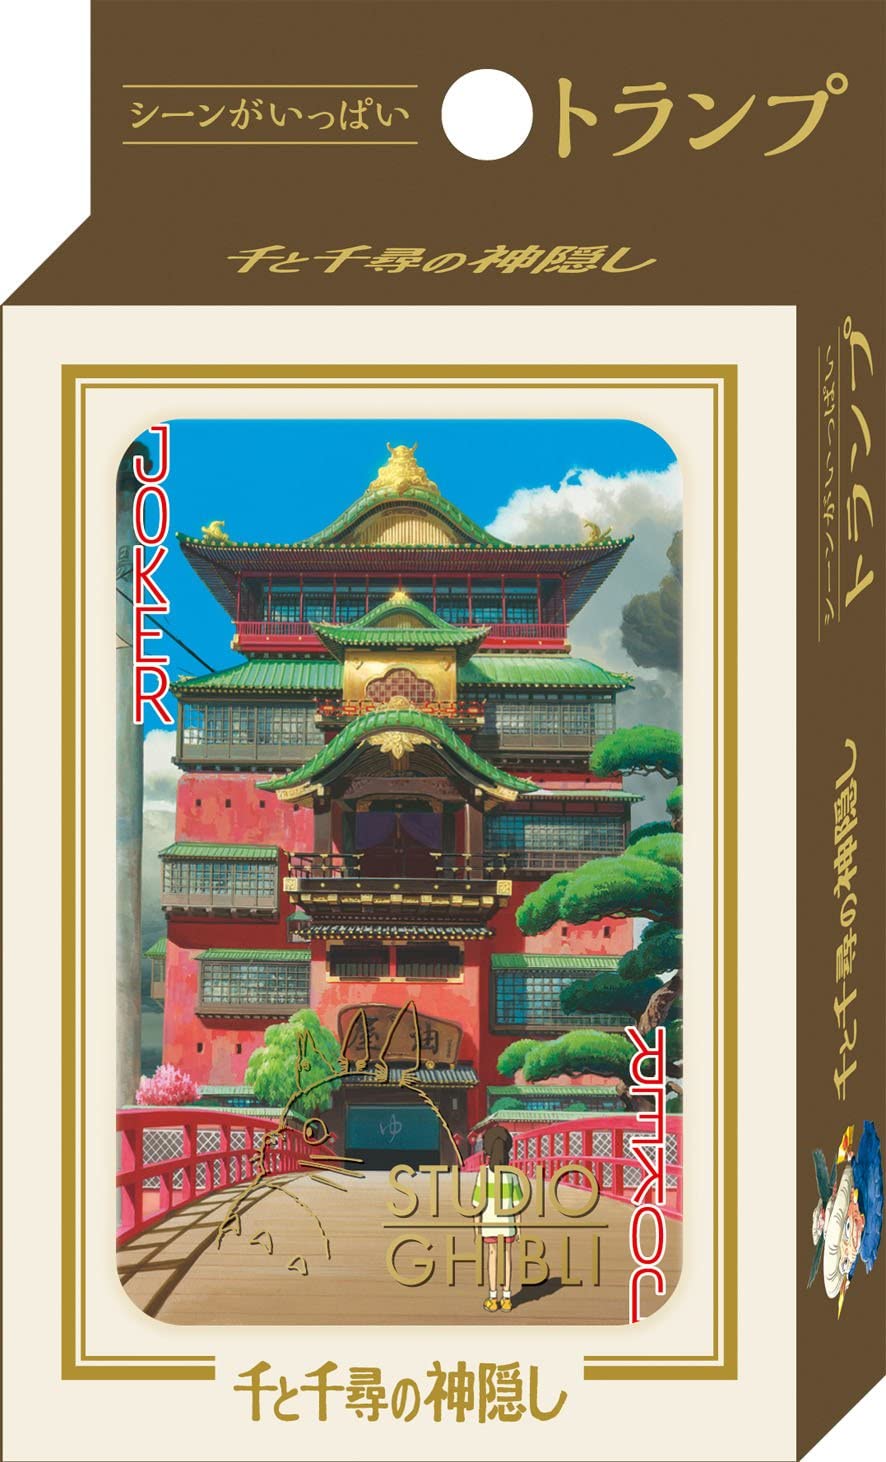 Studio Ghibli Playing Cards Spirtited Away - Official Studio Ghilbi Mechandise Made in Japan